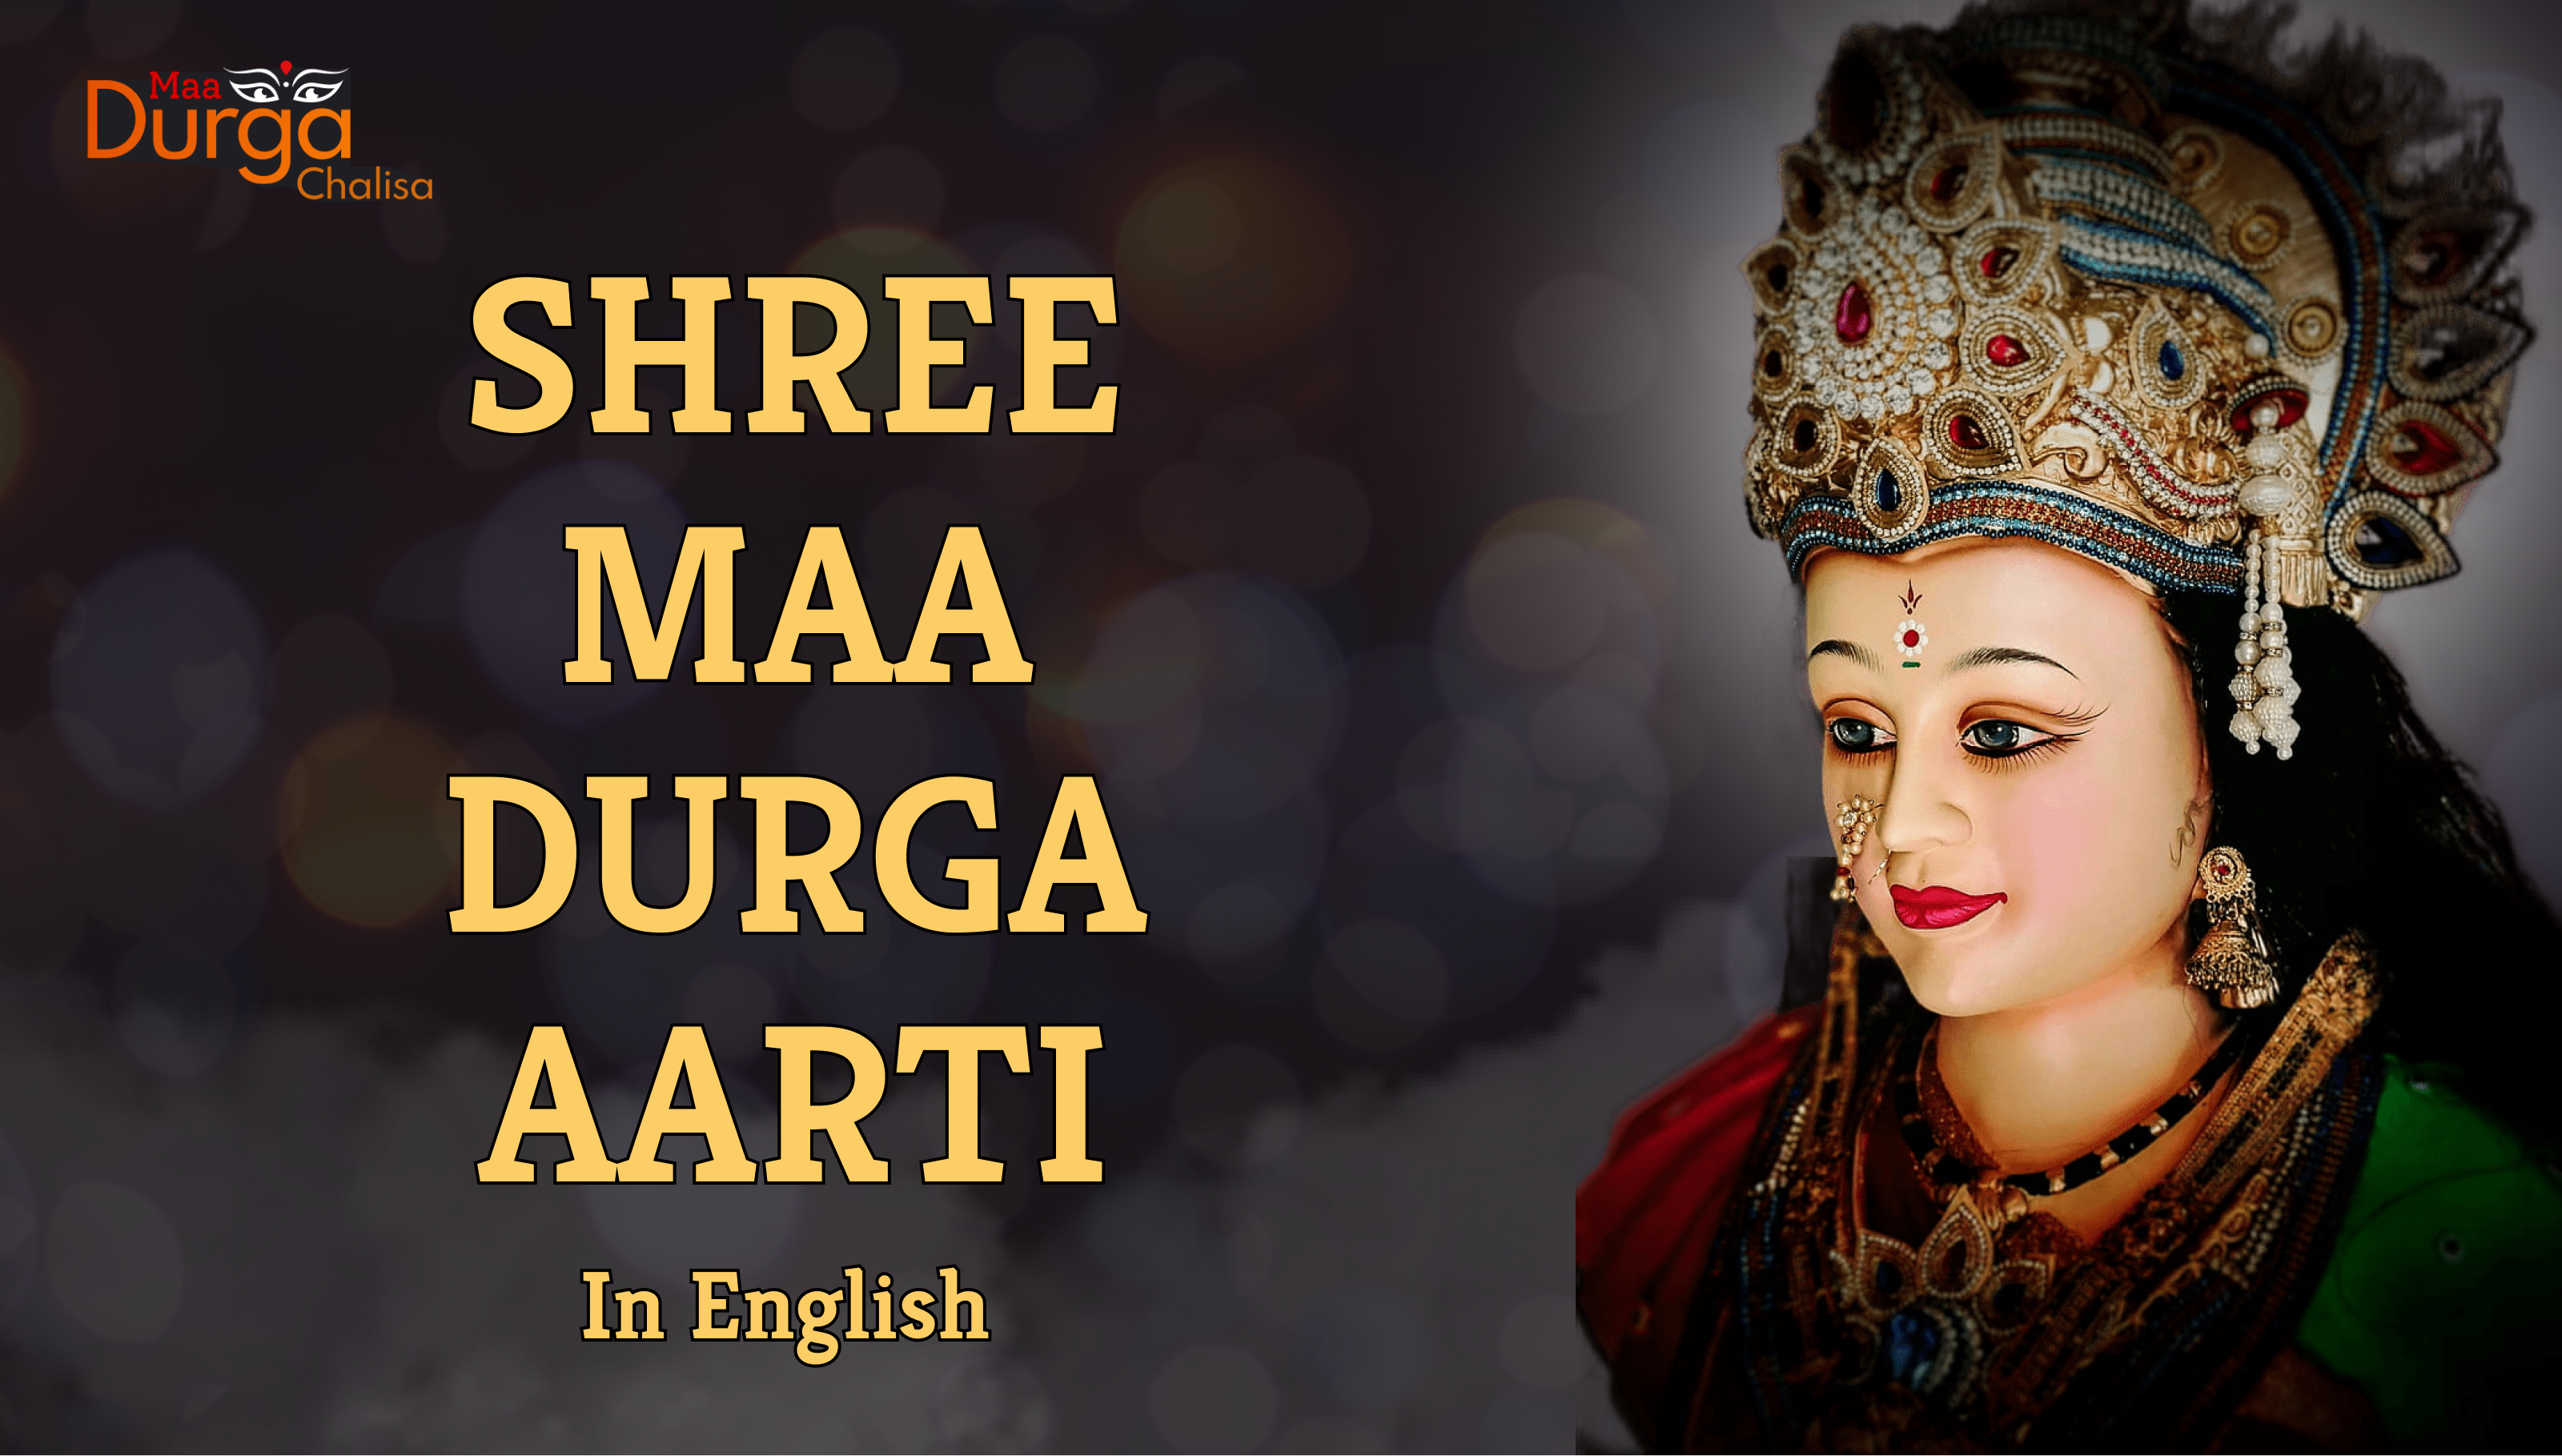 Shree Maa Durga Aarti Lyrics in English